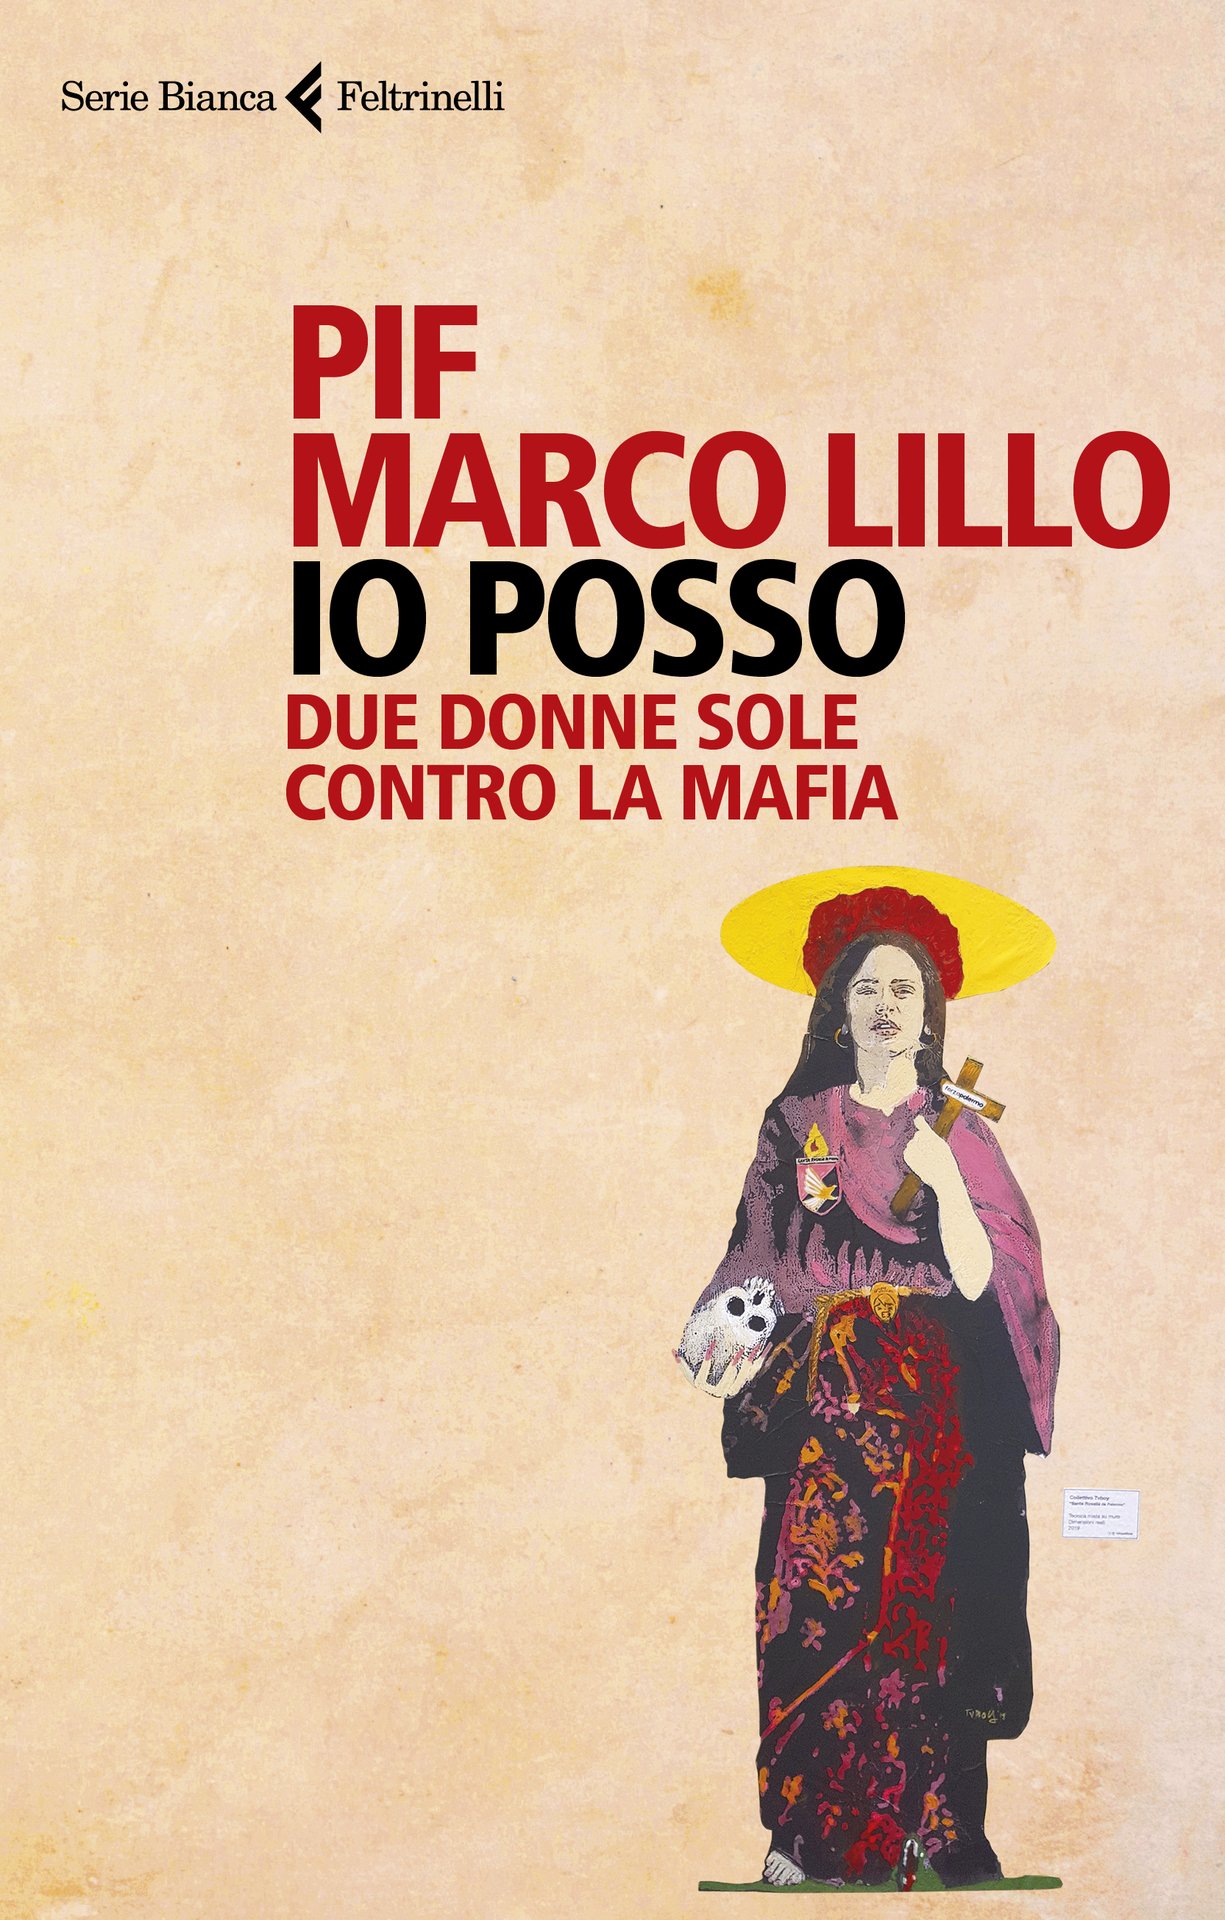 Bagno di folla e grandi emozioni al Salone del Libro di Torino con Pif e Marco Lillo